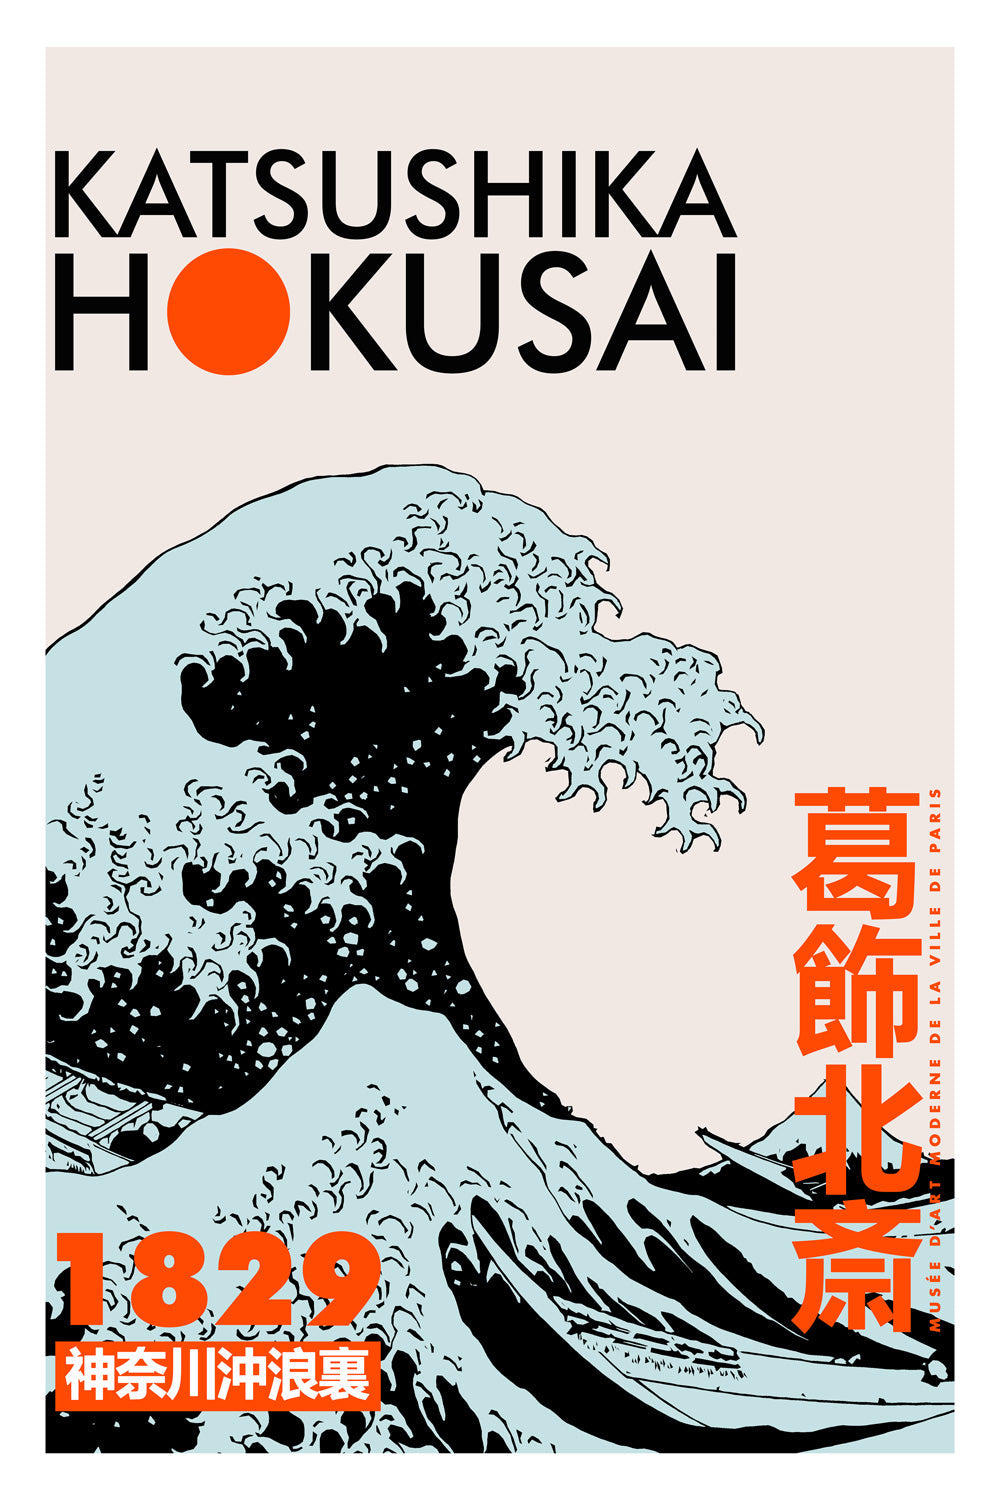 Katsushika Hokusai 1829-expositions, print-Print-30 x 40 cm-BLUE SHAKER